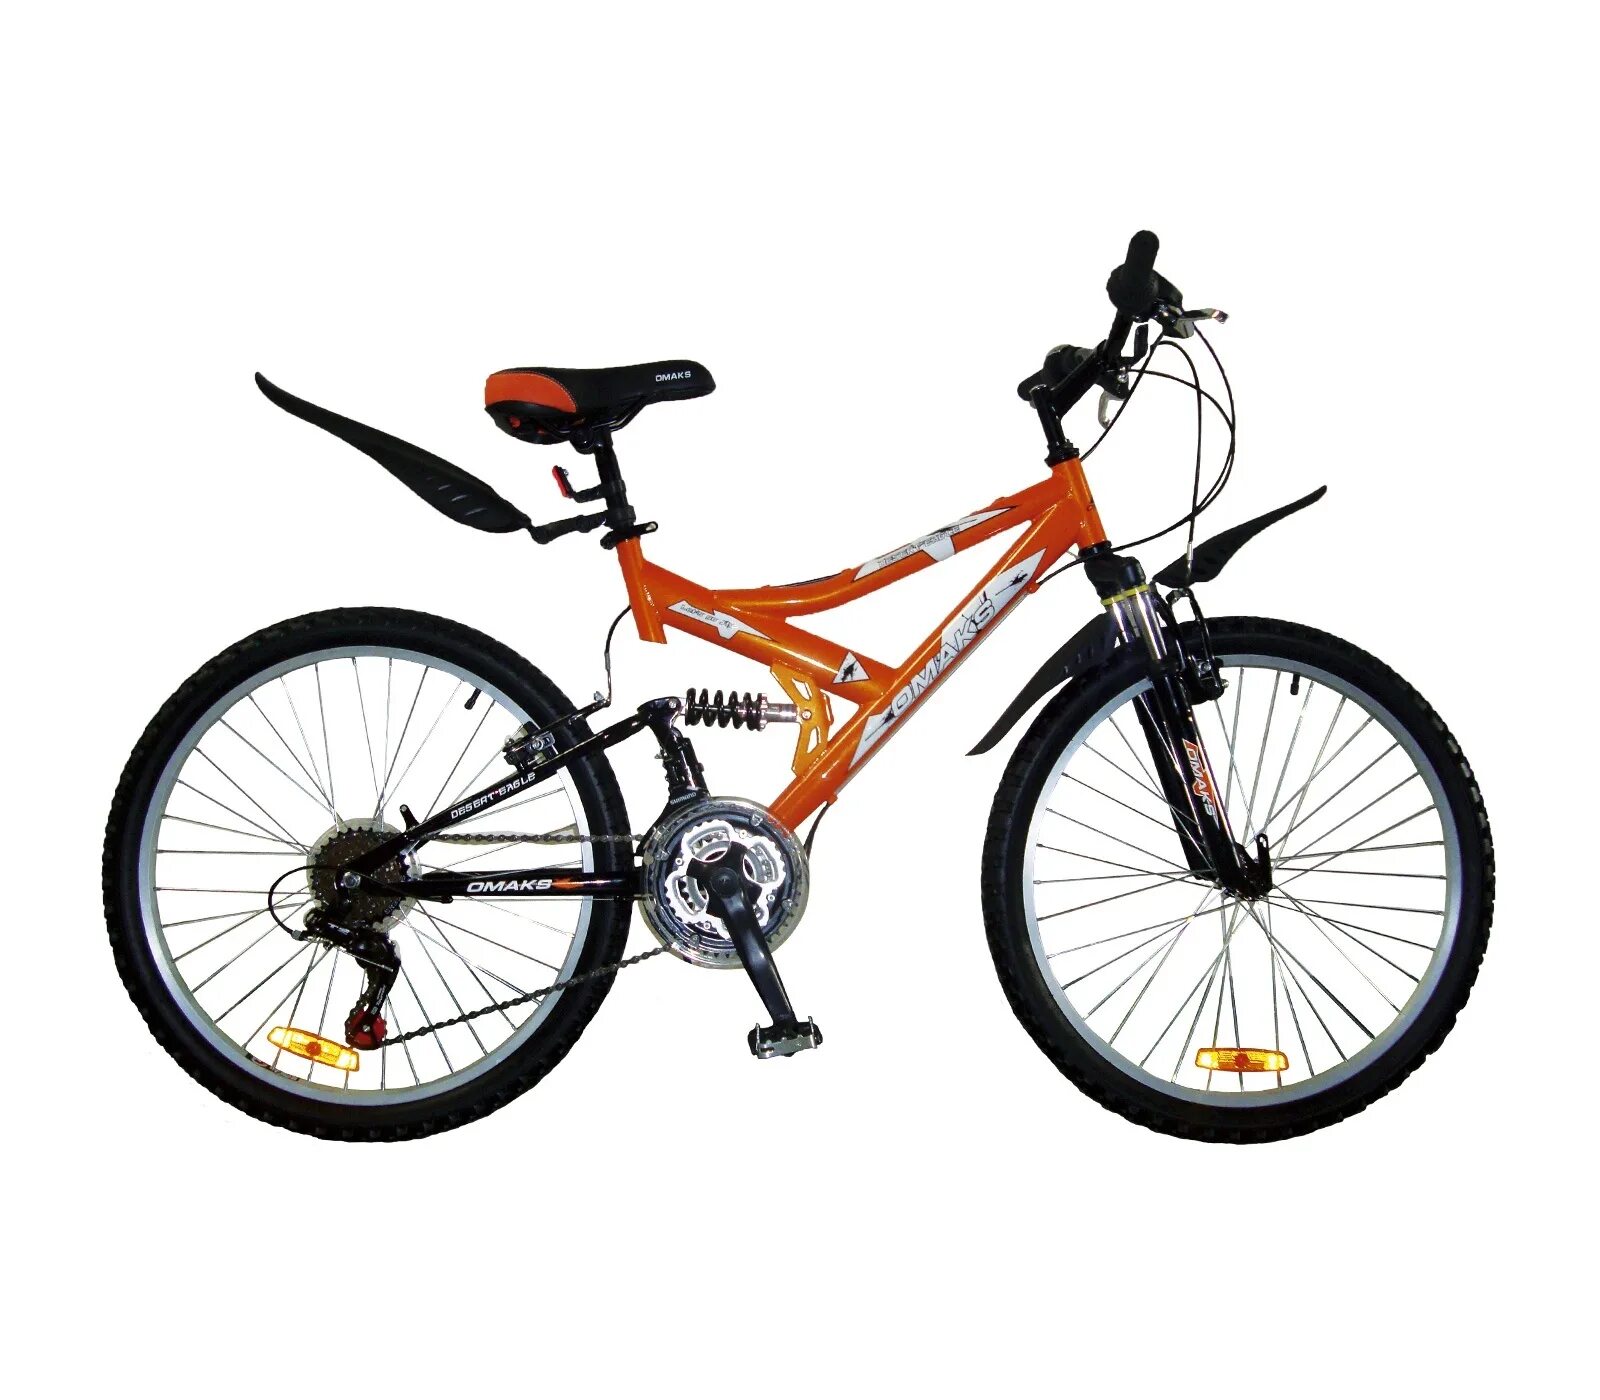 Стелс скоростной оранжевый. Велосипед стелс оранжевый скоростной. Велосипед.скоростной стелс 24 скорости. Велик стелс скоростной оранжевый. Купить велосипед 7 10